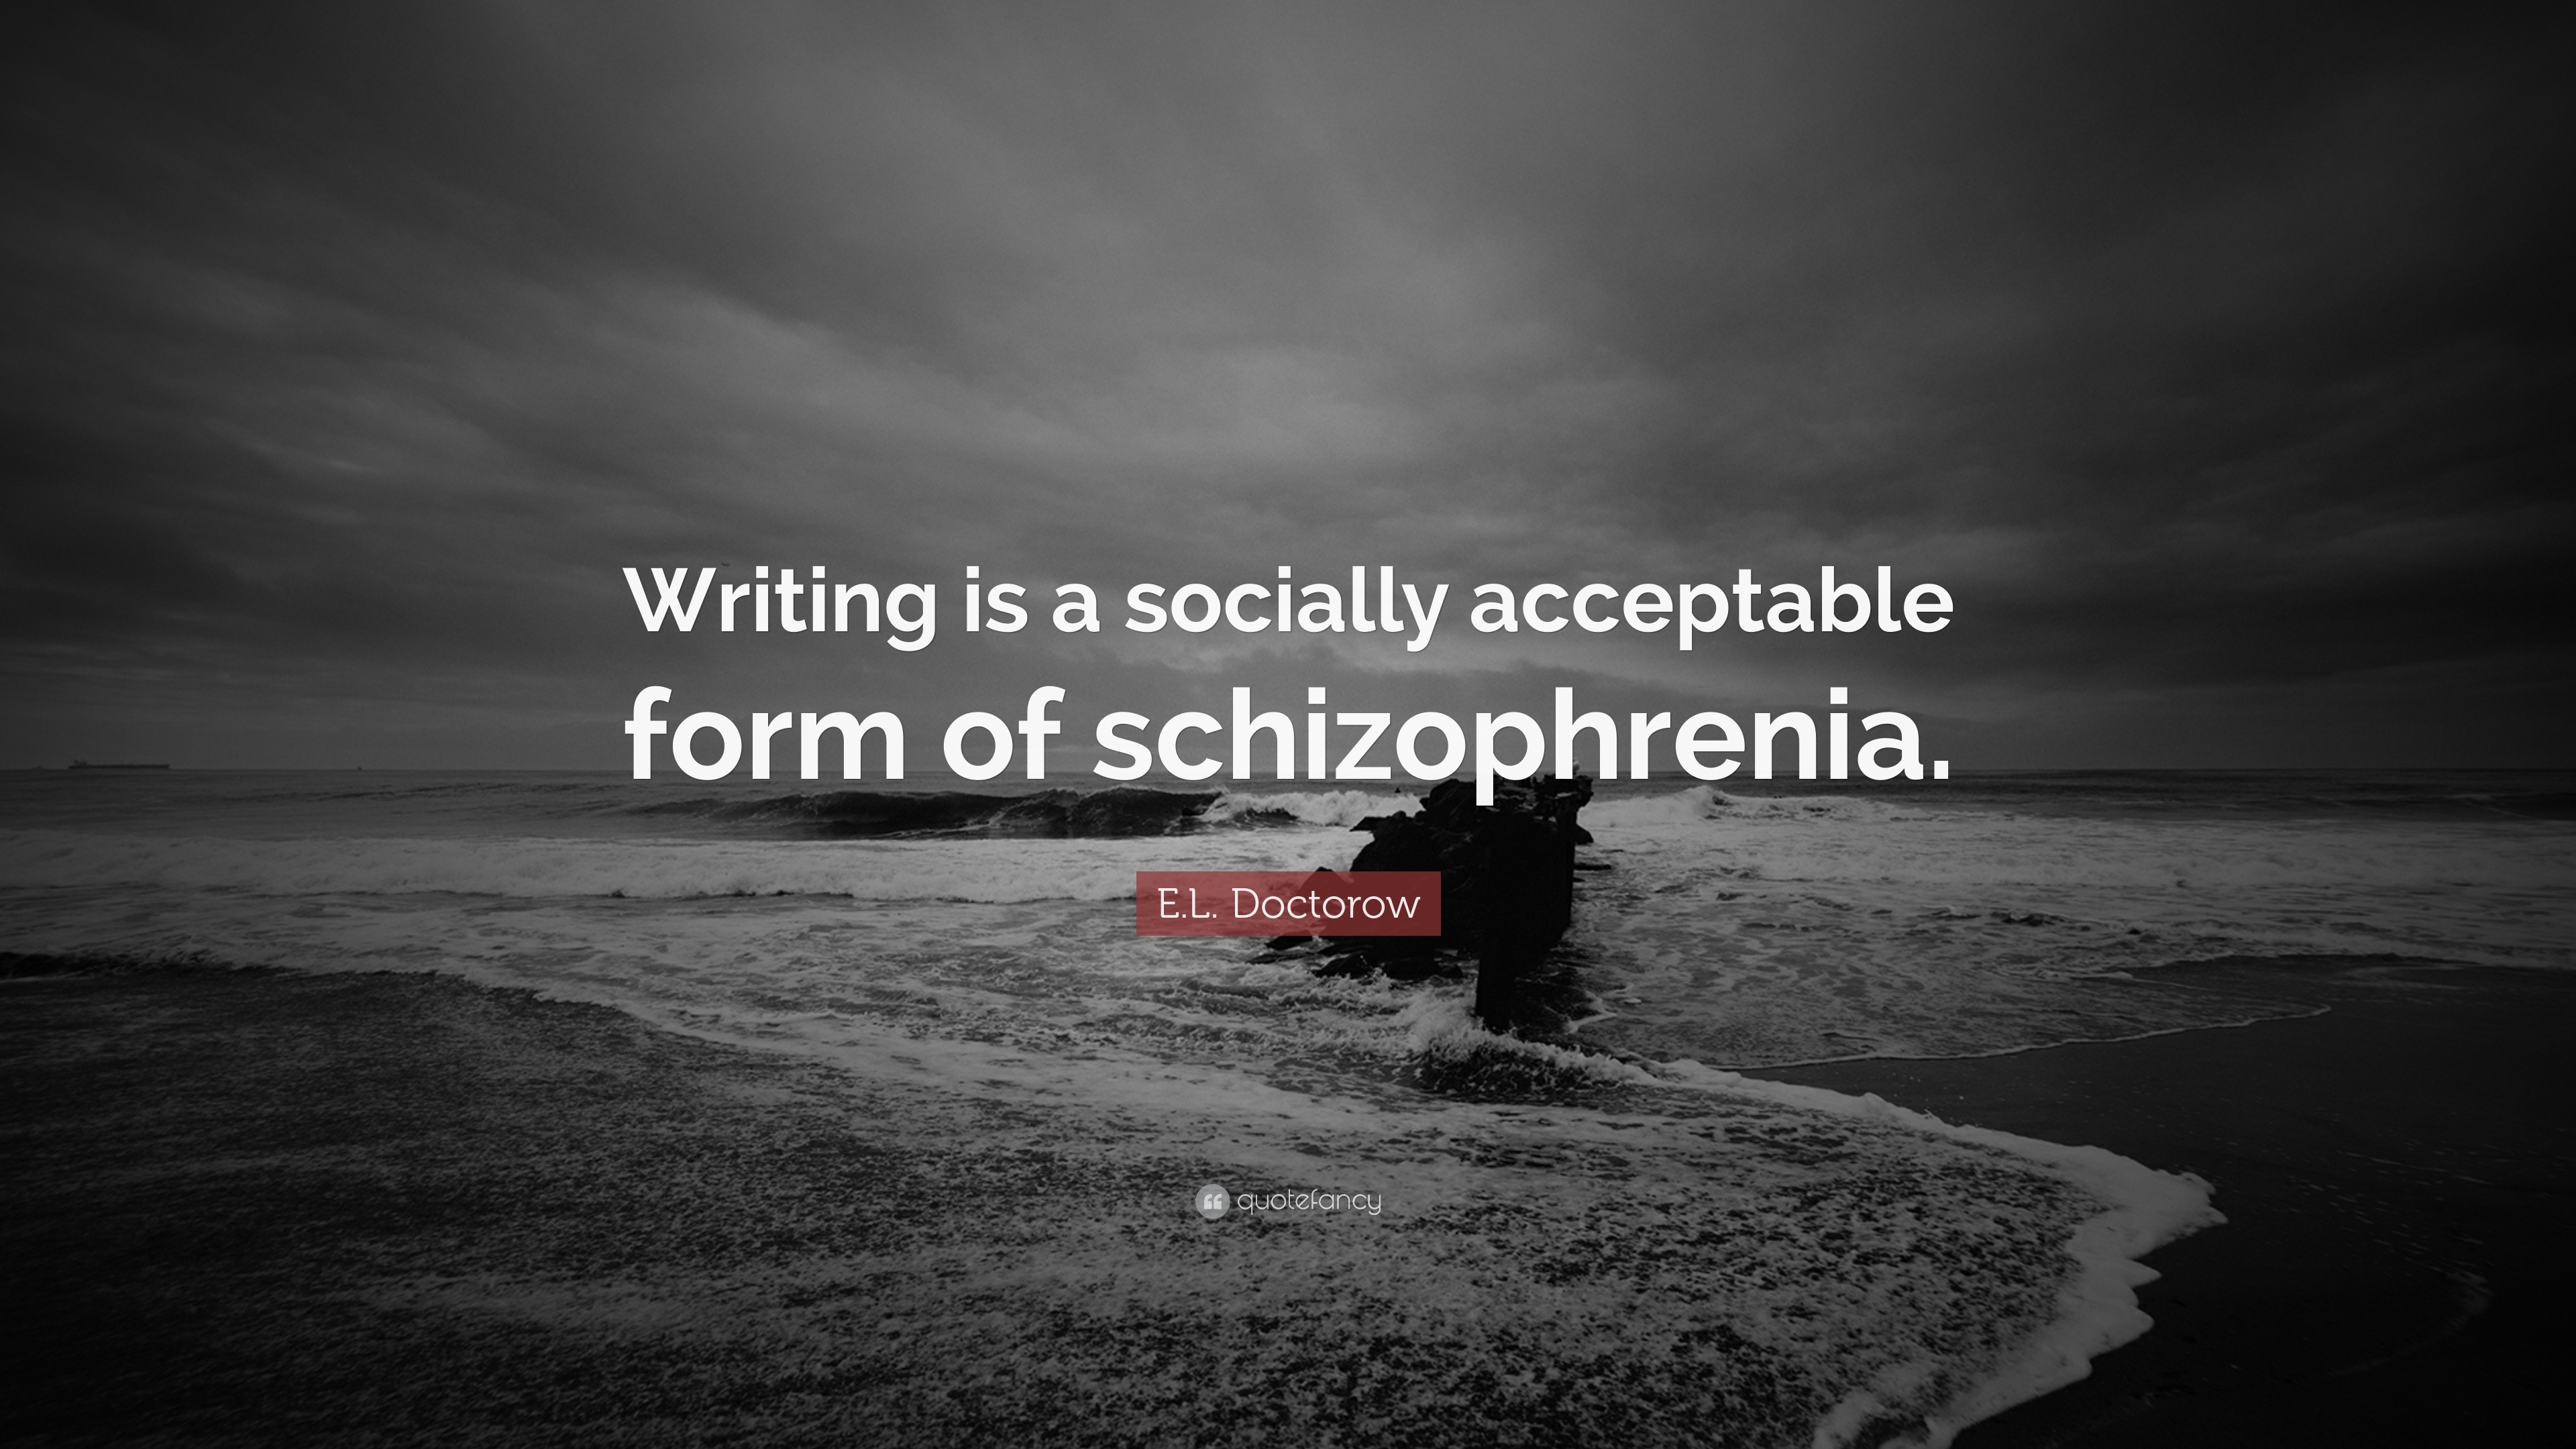 A Socially Acceptable Form Of Schizophrenia